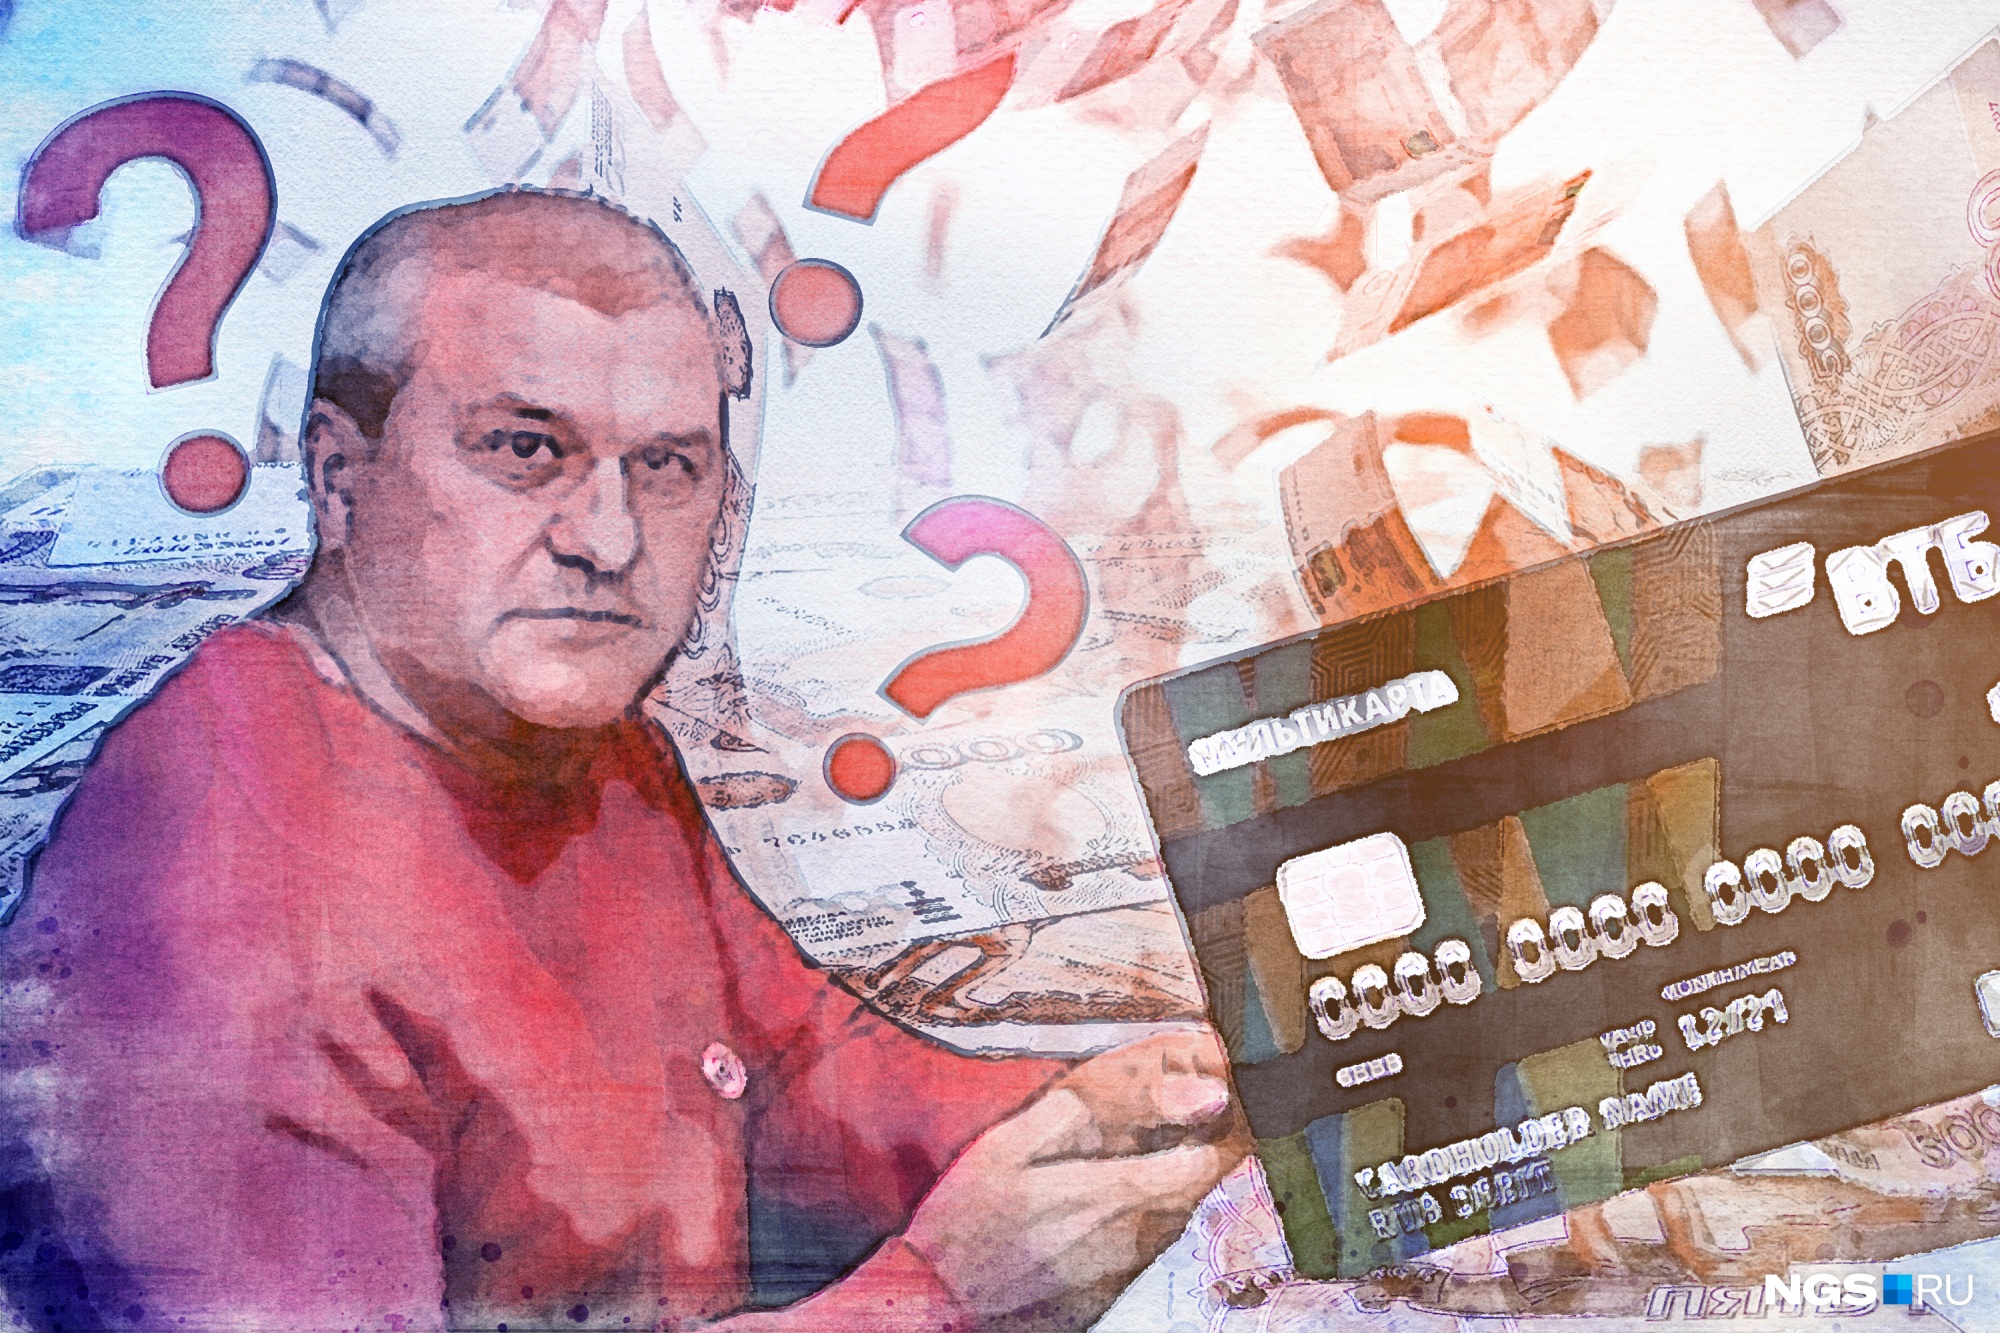 У новосибирца безо всякого общения по телефону за 8 минут украли с банковской карты более 100 тысяч